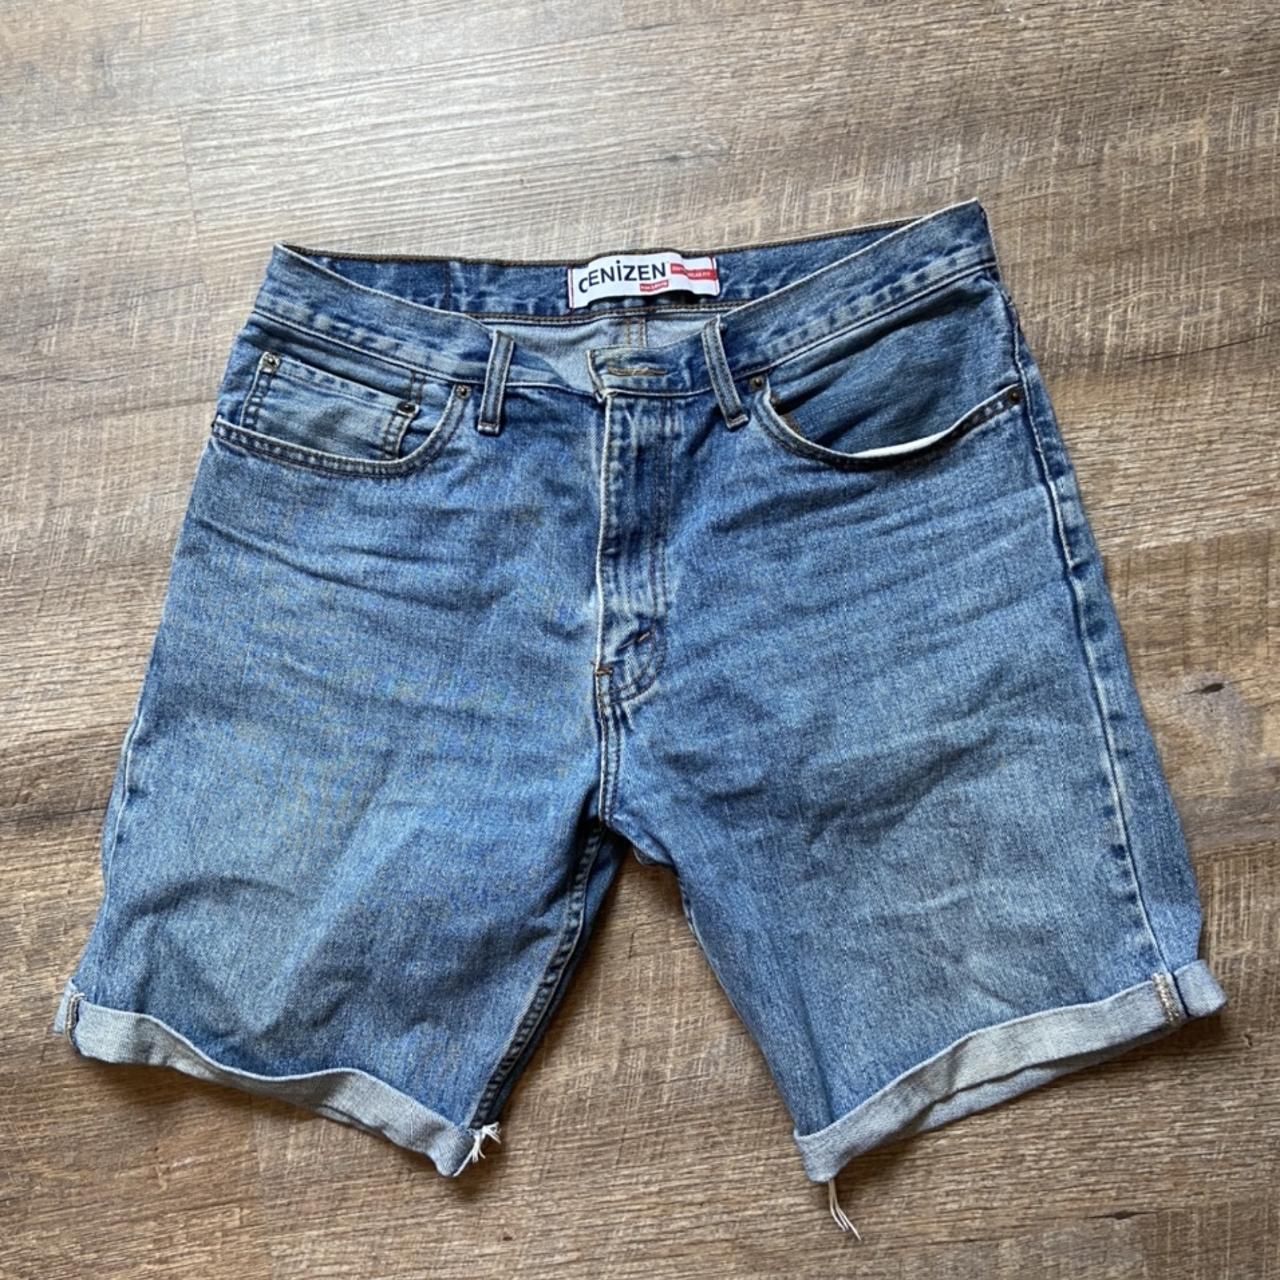 Levi's Denizen jean shorts - fit nicely, custom jean... - Depop